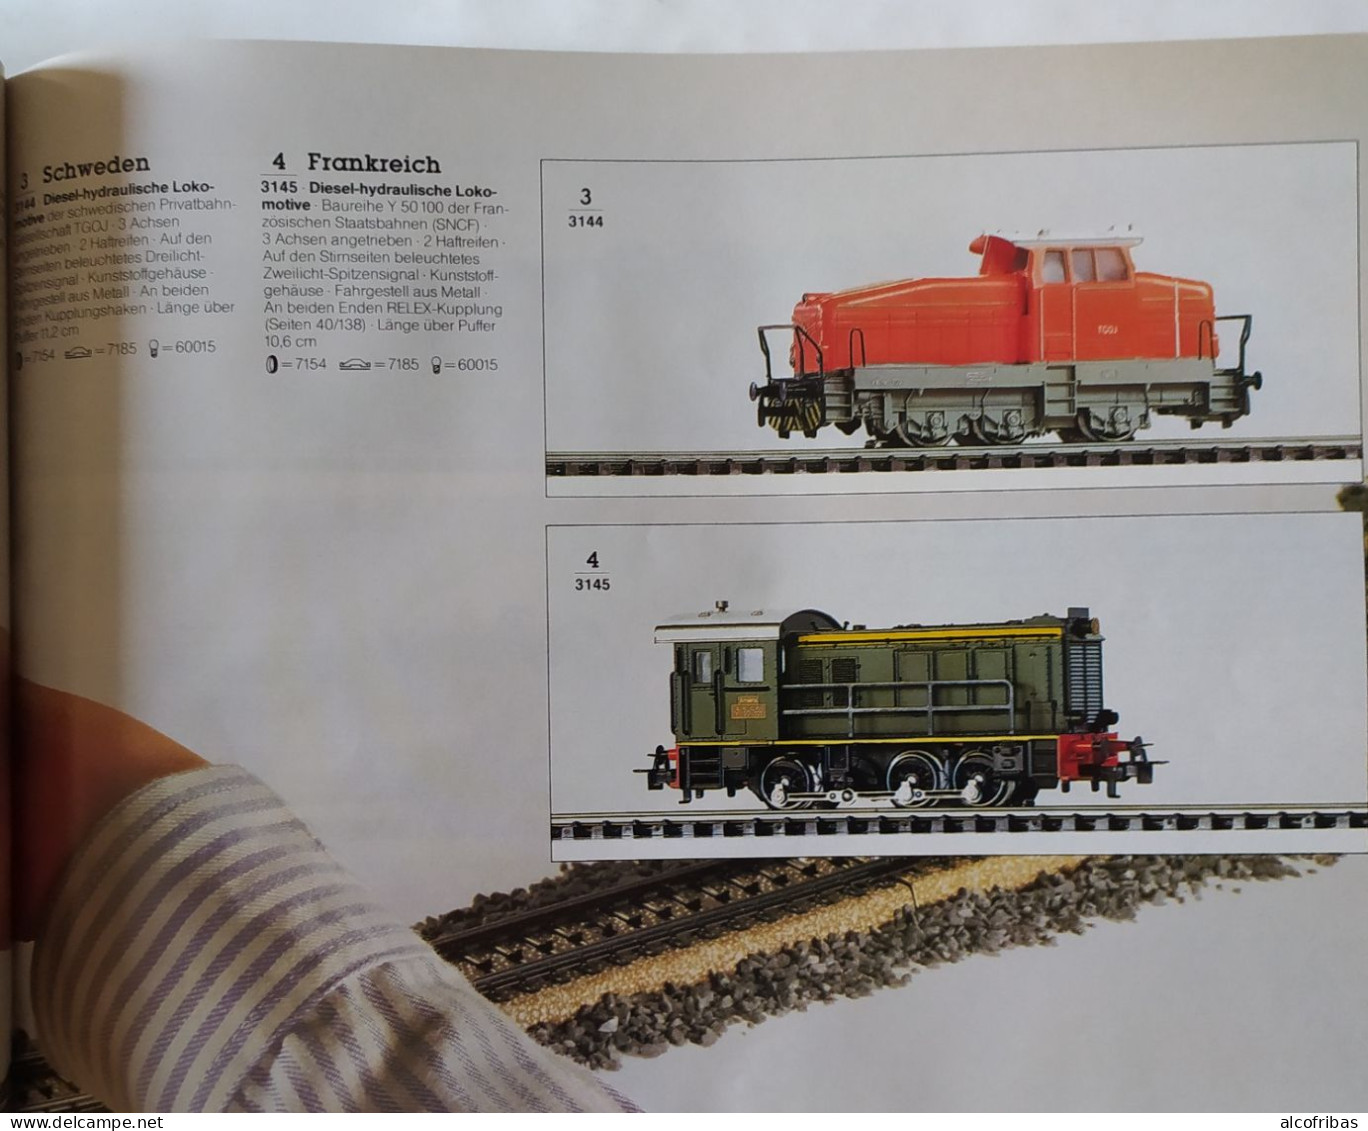 Train Chemin Fer Rail Locomotive Wagon Catalogue Katalogue Marklin 1984 -1985 - Germany